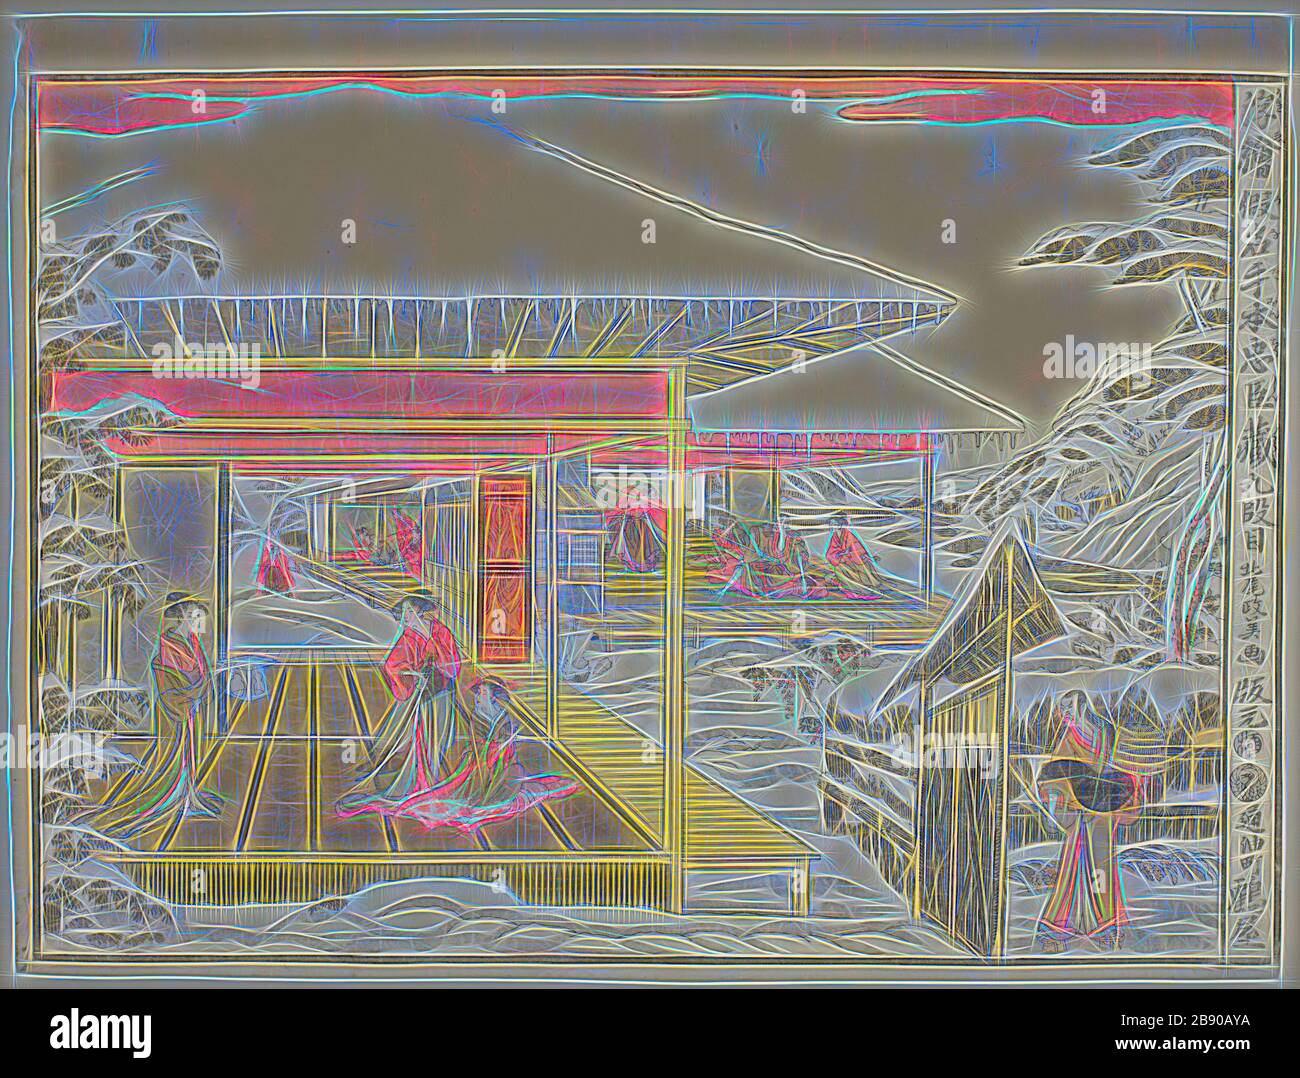 Loi IX (Kudanme), de la série perspective Photos de la Storehouse des fidèles retardeurs (Uki-e kanadehon Chushingura), c. 1791/94, Kitao Masayoshi (Kuwagata Keisai), japonais, 1764–1824, Japon, imprimé color woodblock, horizontal o-oban, 33,4 x 43,8 cm, repensé par Gibon, design de glanissement chaleureux et gai de luminosité et de rayons de lumière radiance. L'art classique réinventé avec une touche moderne. La photographie inspirée du futurisme, qui embrasse l'énergie dynamique de la technologie moderne, du mouvement, de la vitesse et révolutionne la culture. Banque D'Images